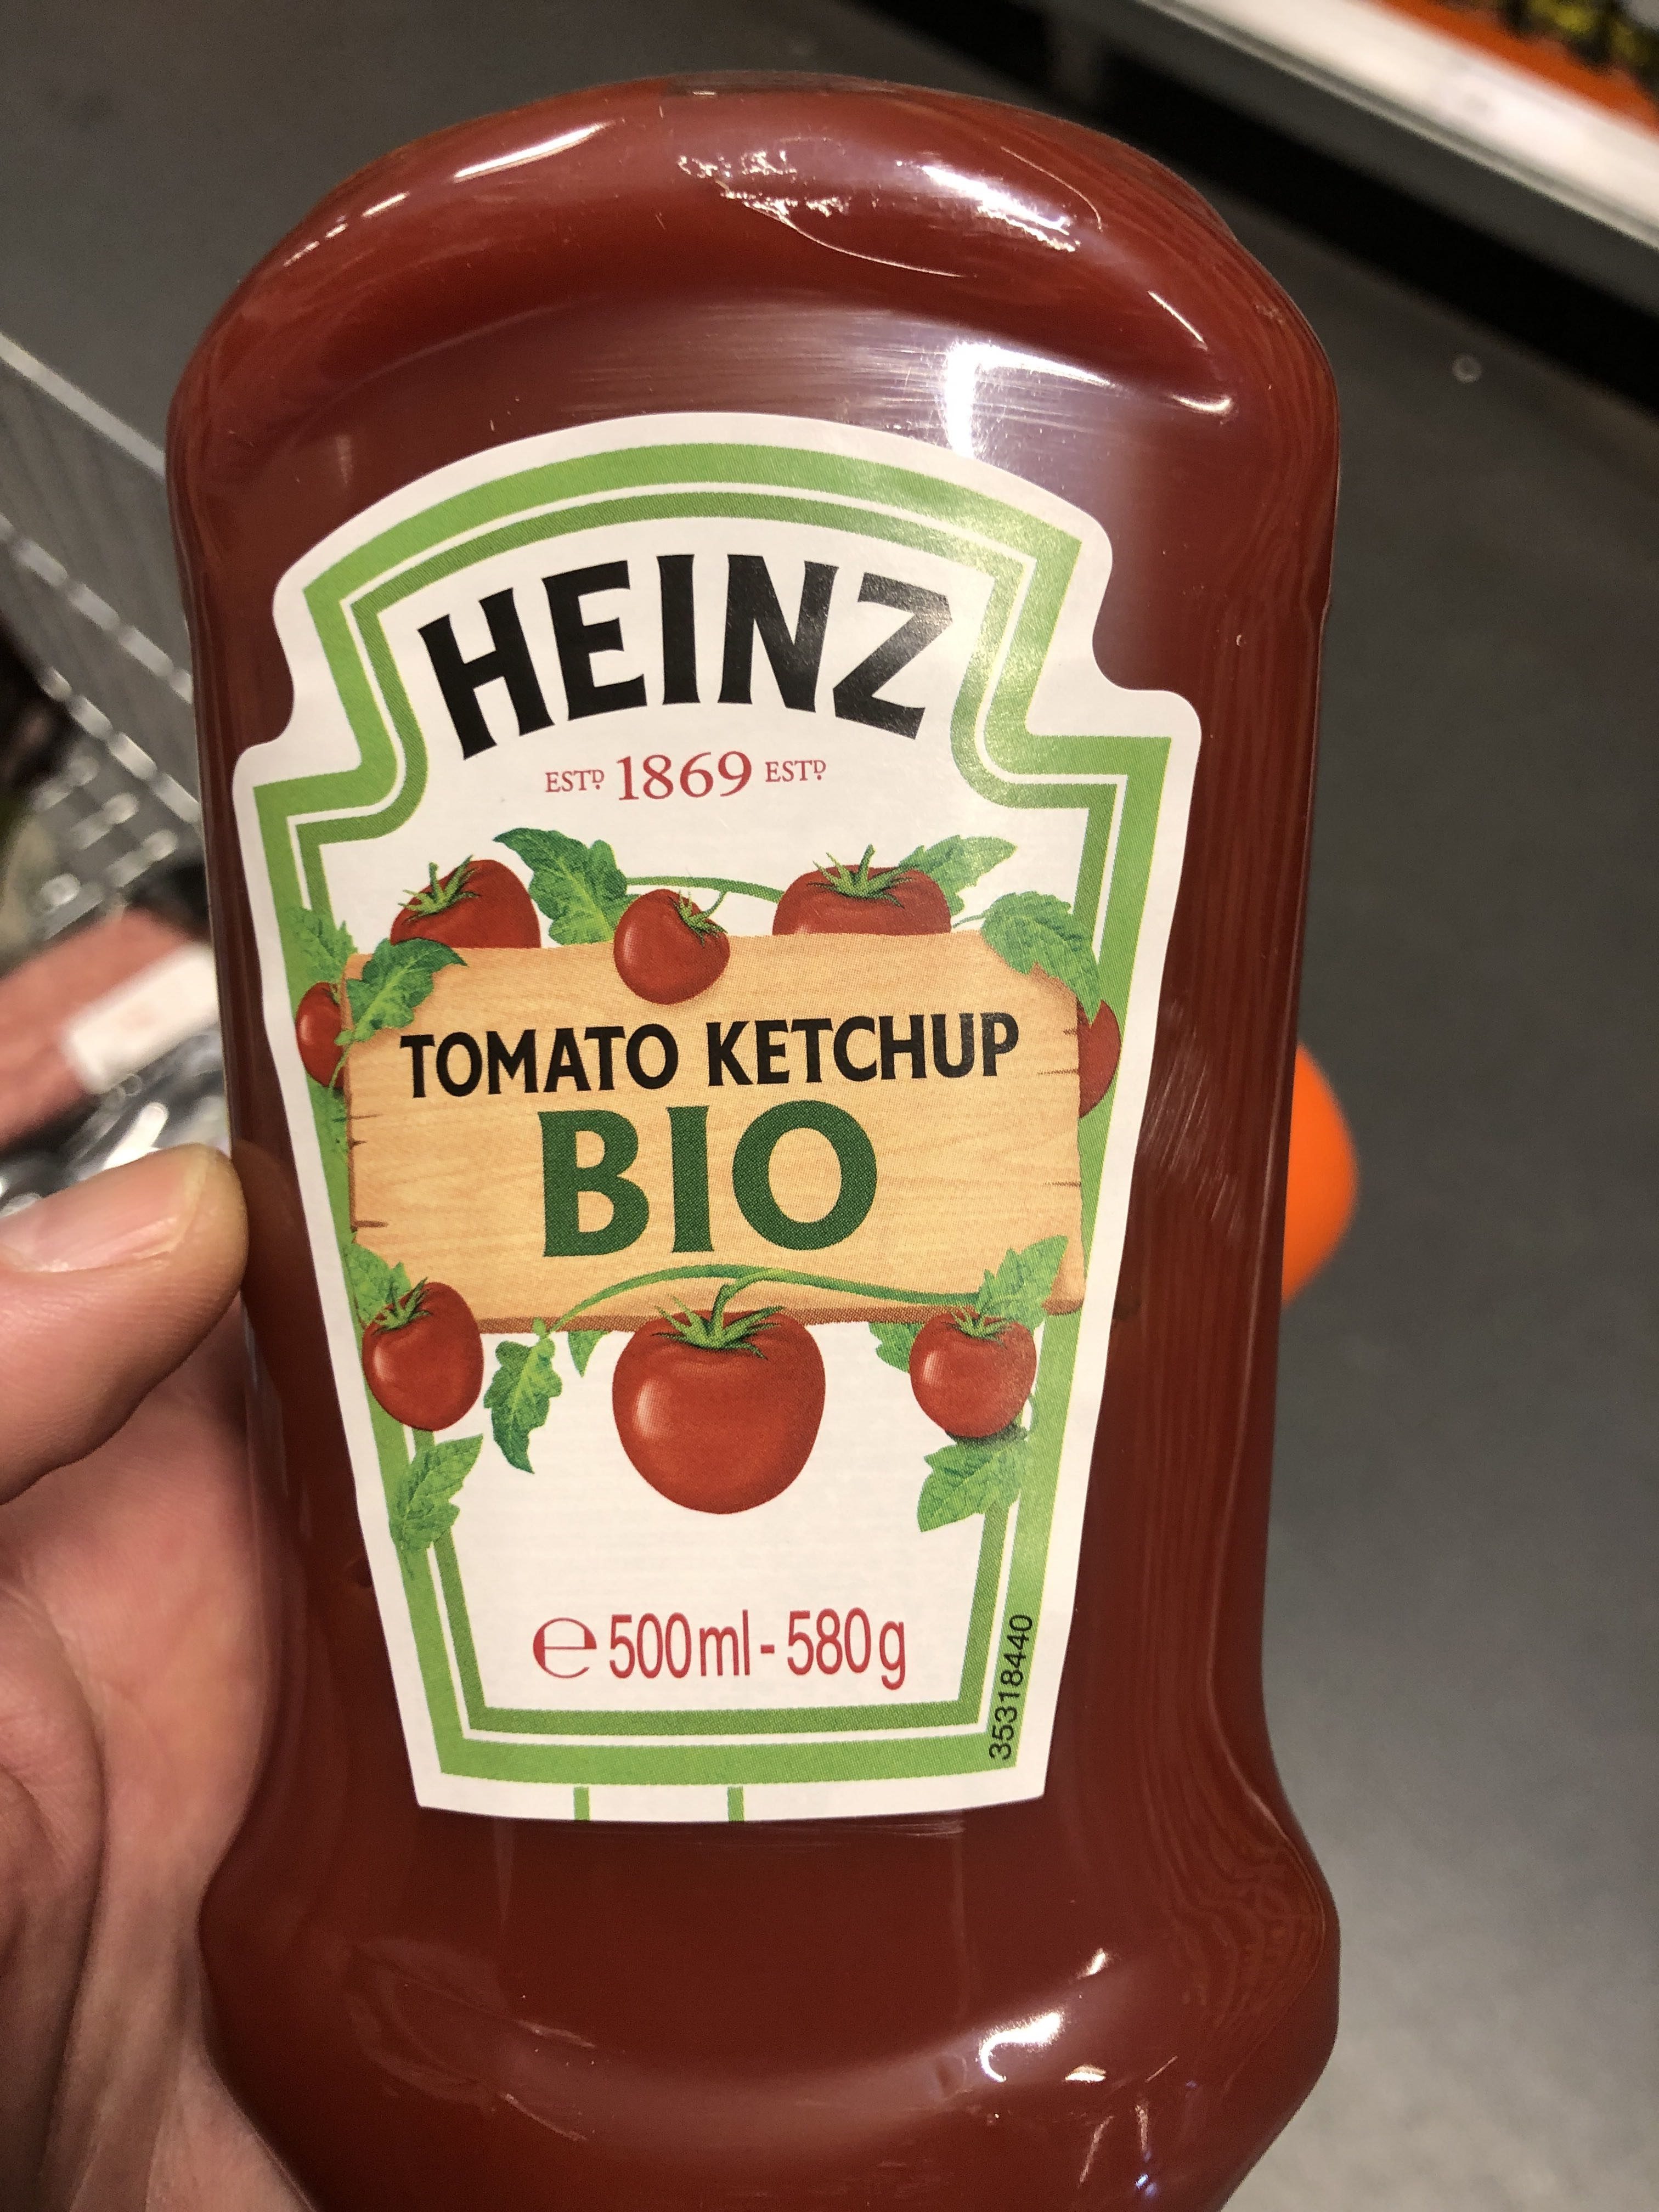 HEINZ Tomato Ketchup Bio - Product - fr